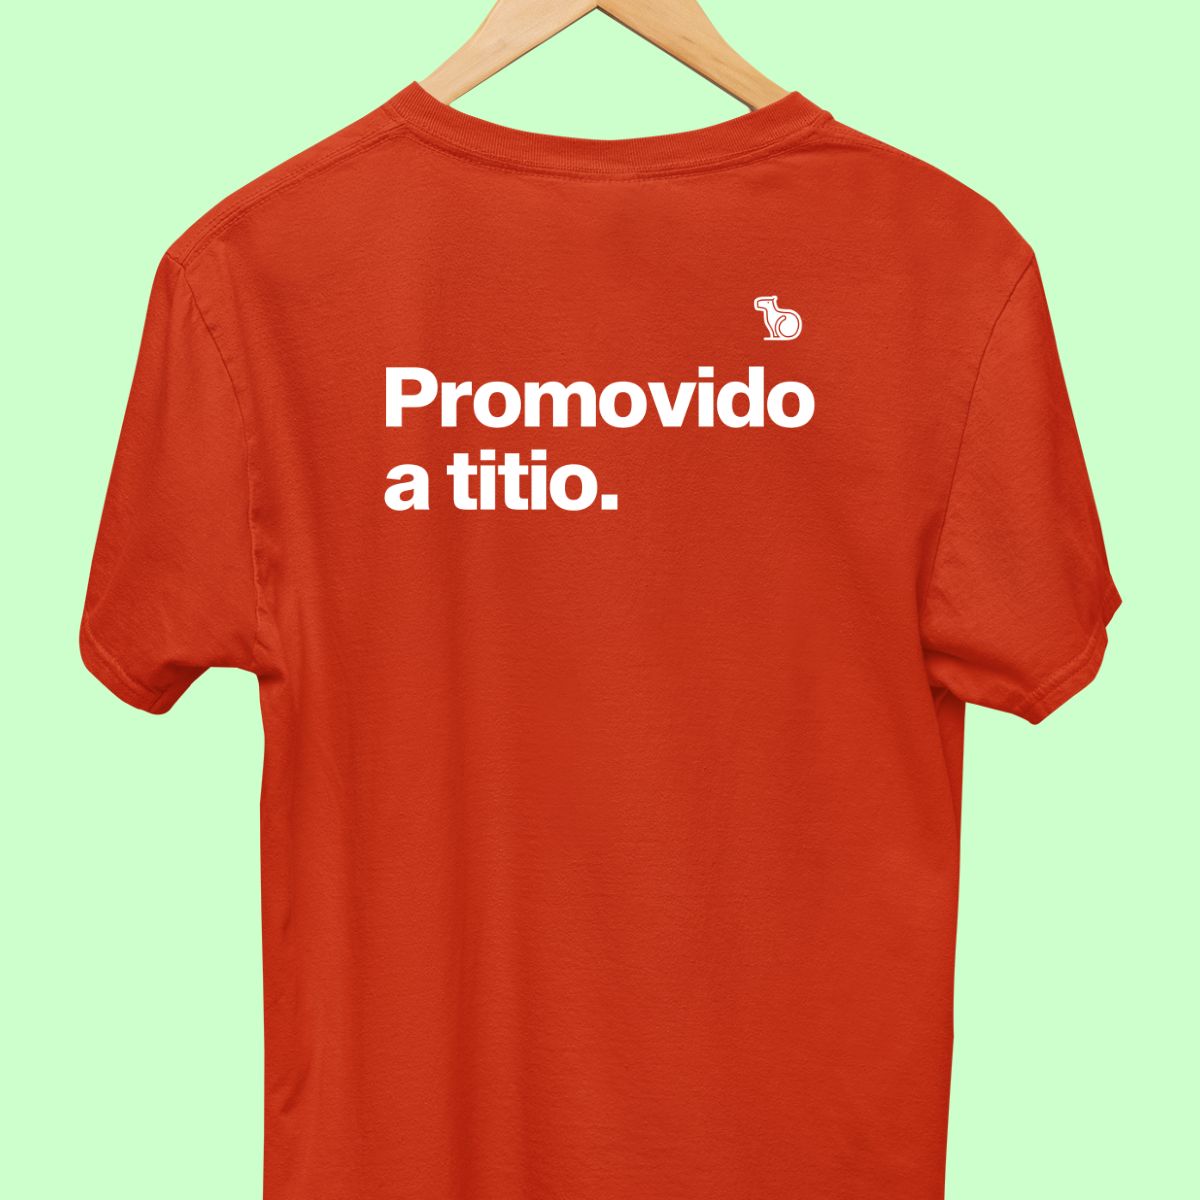 Camiseta com a frase "promovido a titio" masculina vermelha.